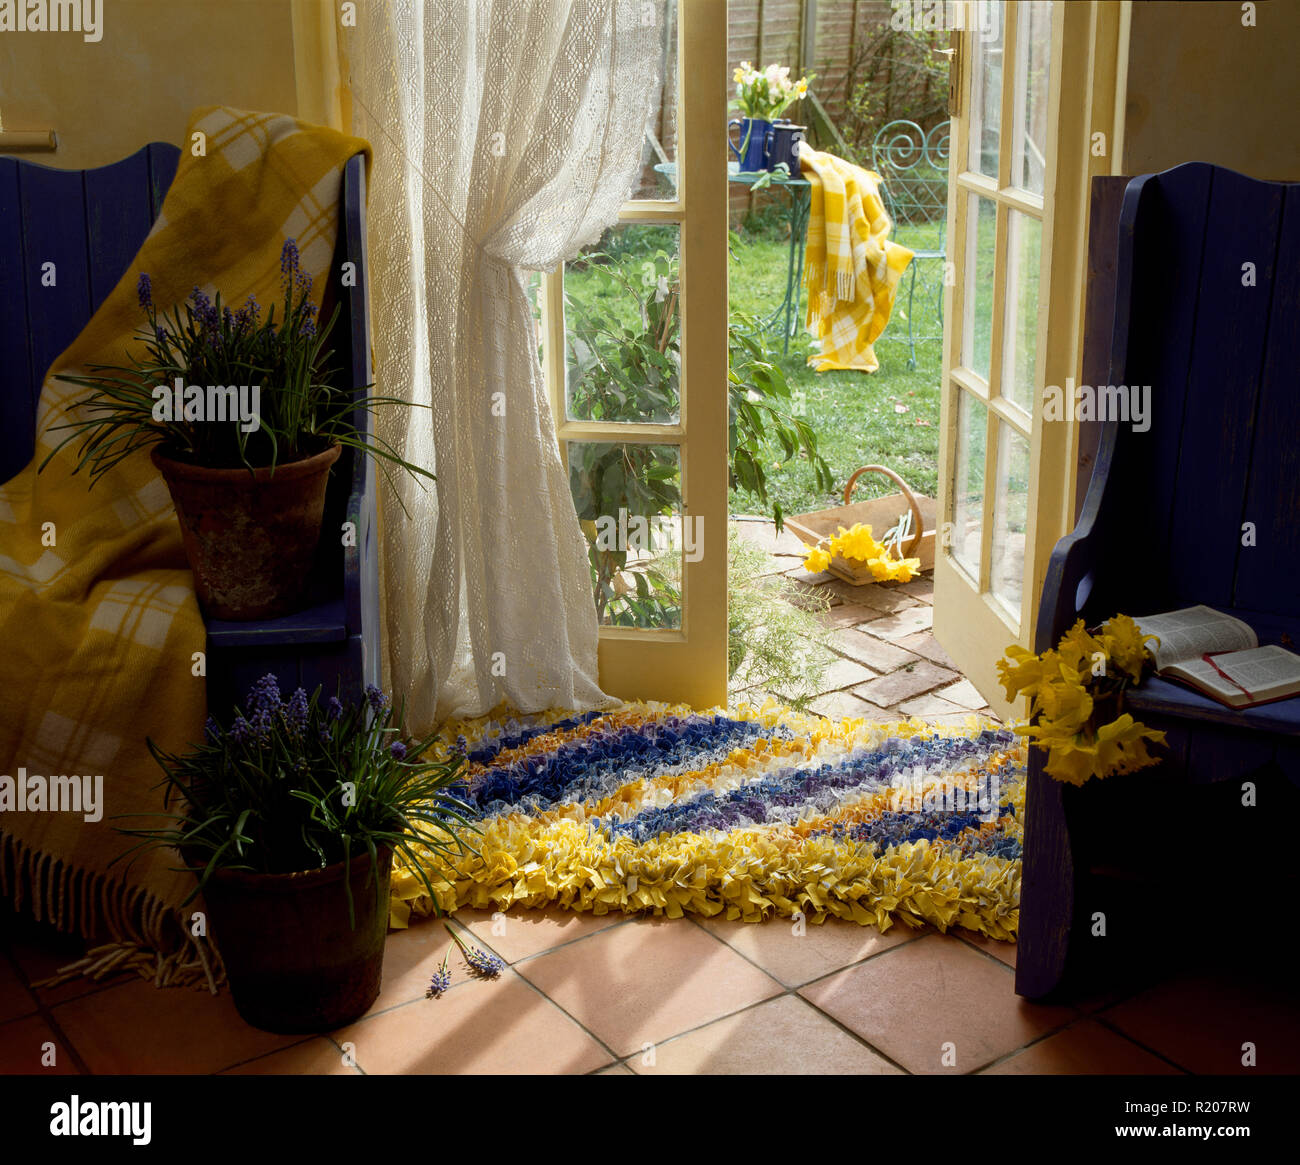 Amarillo y azul rag rug en el piso delante de ventanas Francesas Foto de stock